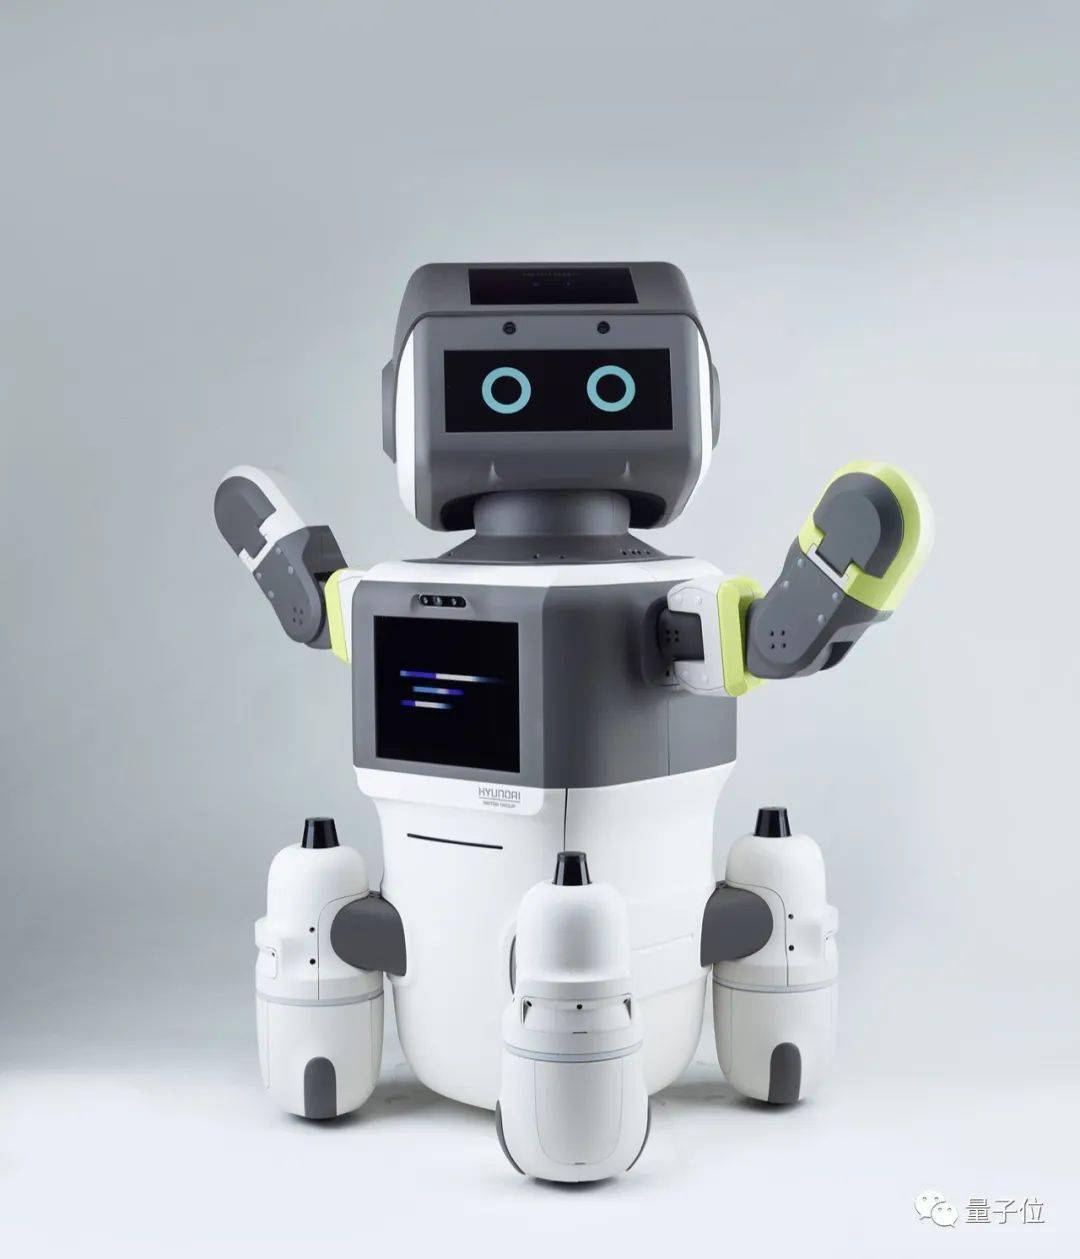 波士顿动力母公司最新机器人